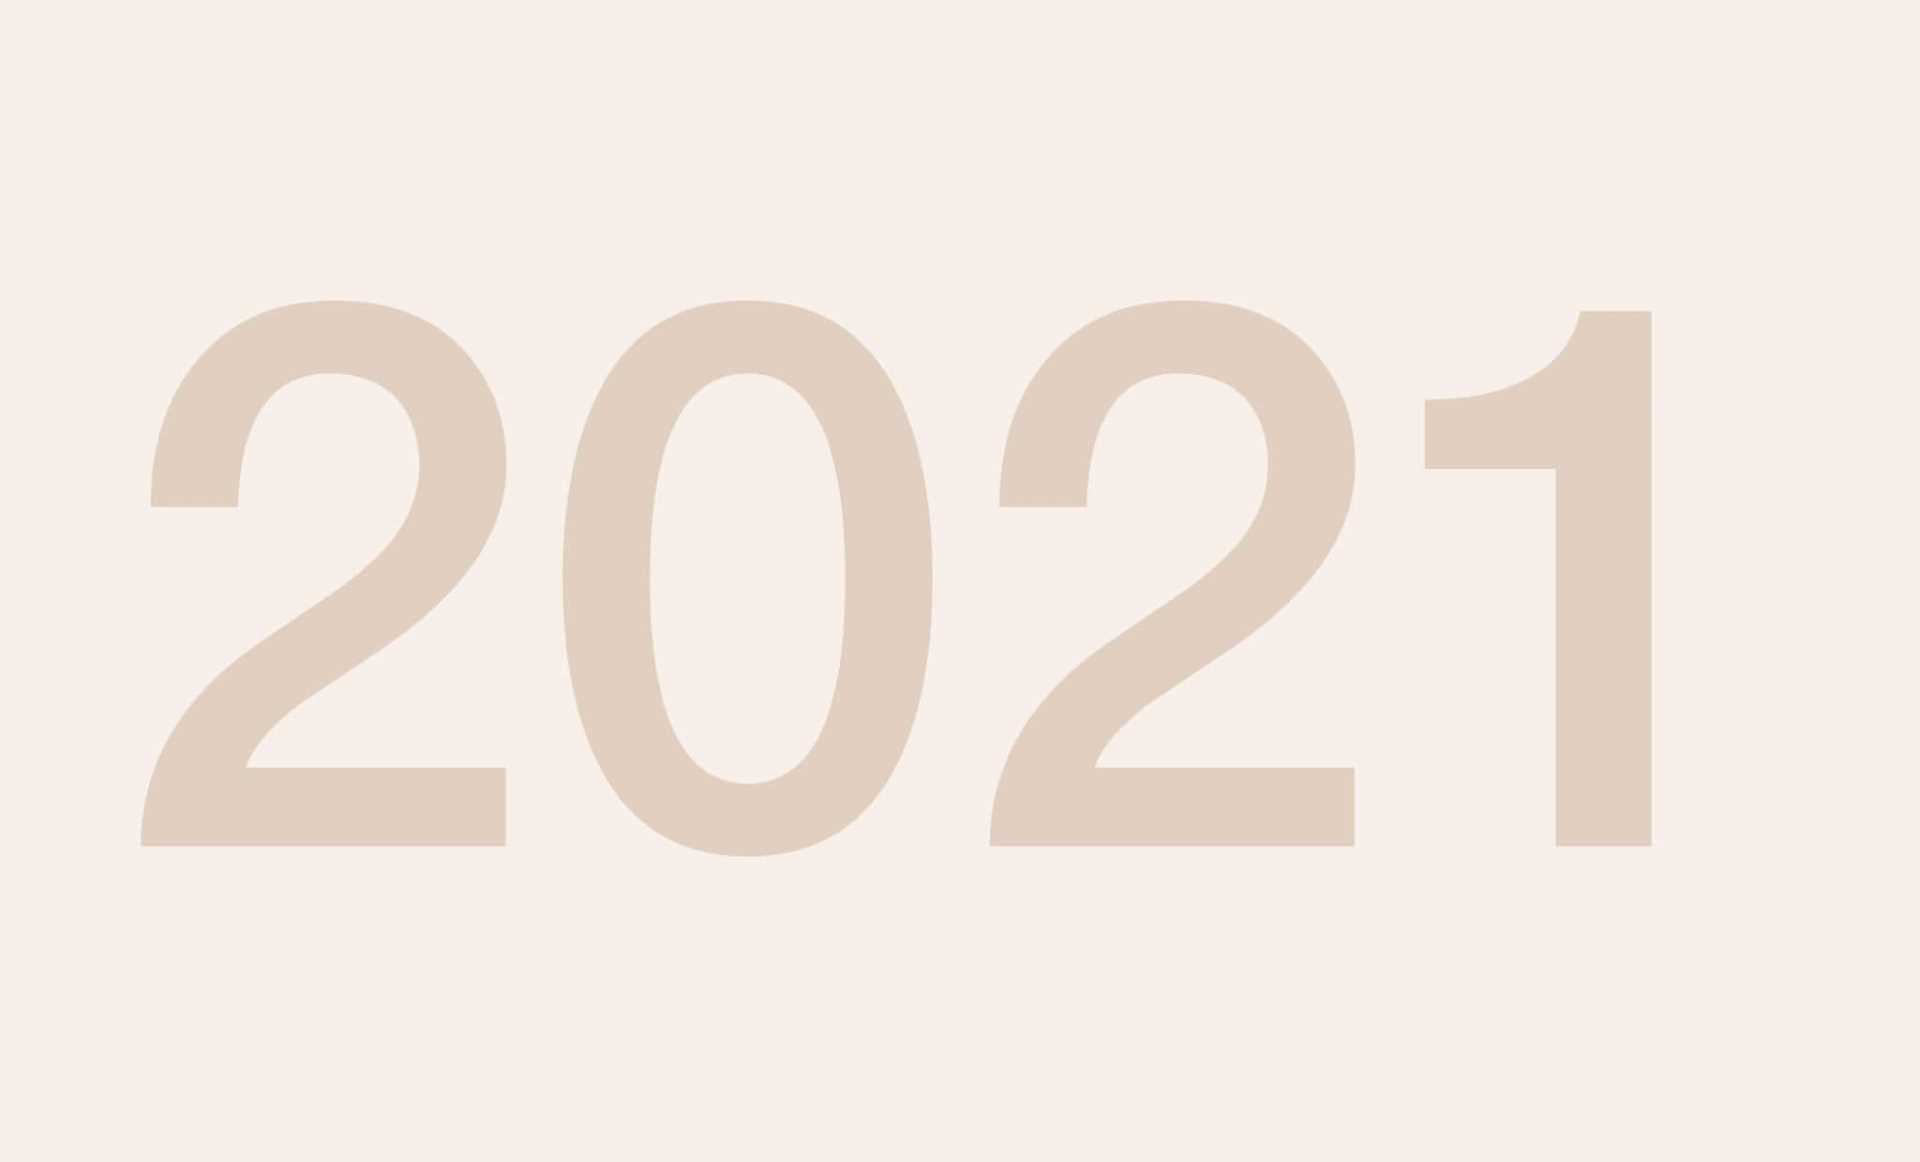 Grafik Jahreszahl 2021